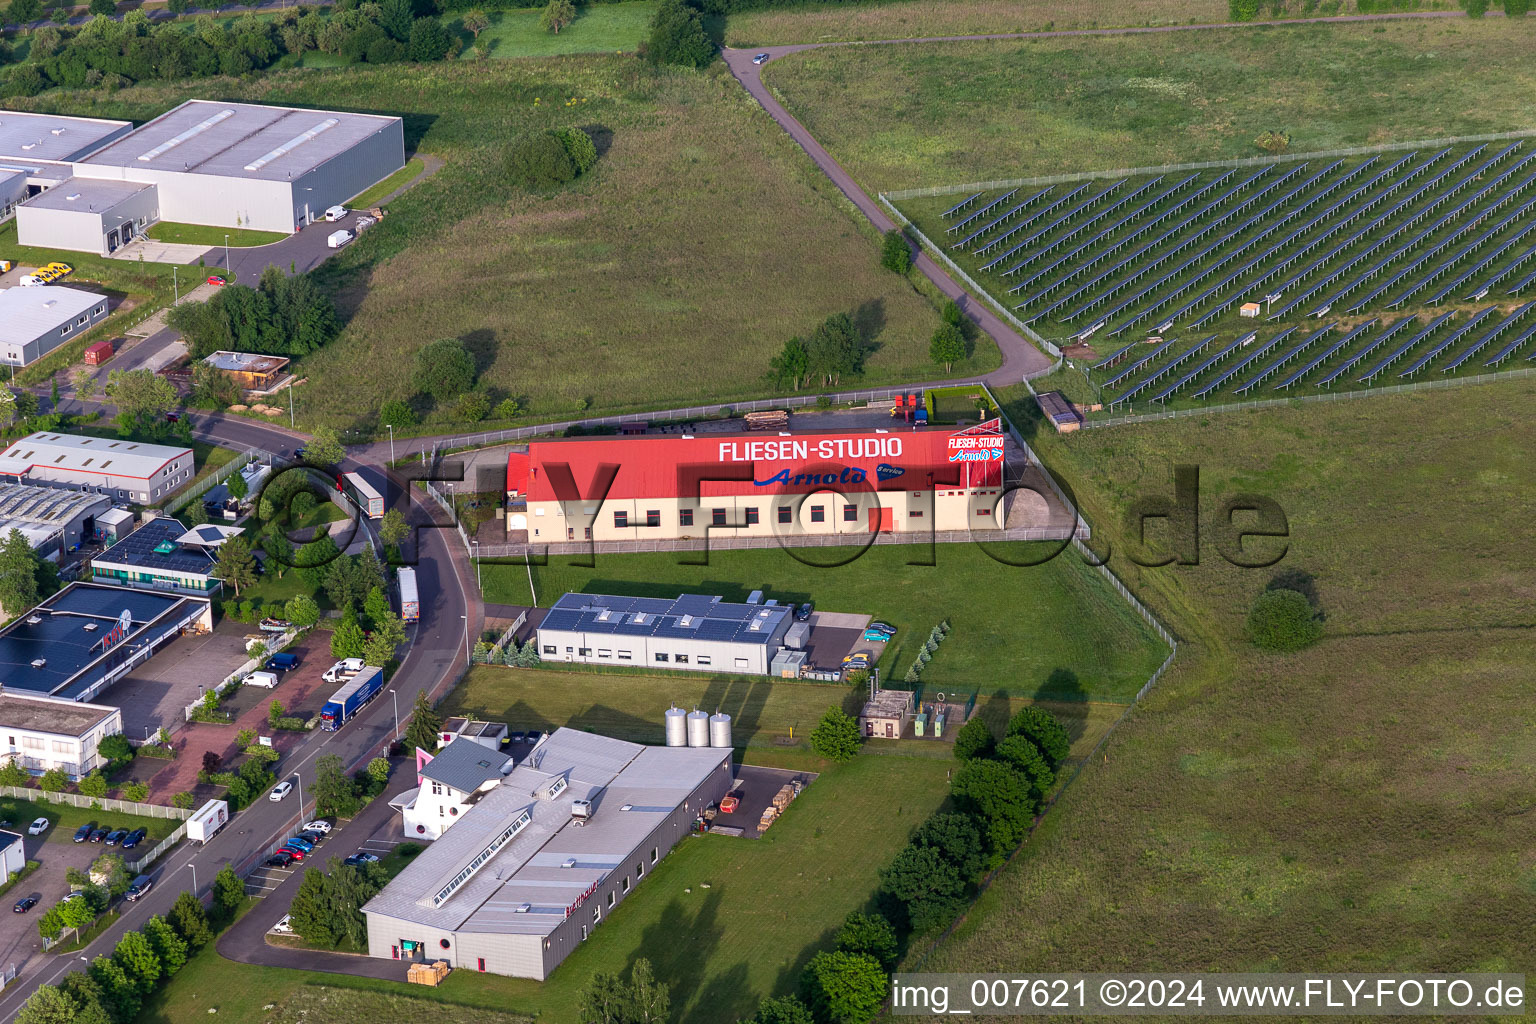 Vue aérienne de Zone commerciale et implantation d'entreprise avec Arnold Tile Studio à Waltershausen dans le département Thuringe, Allemagne